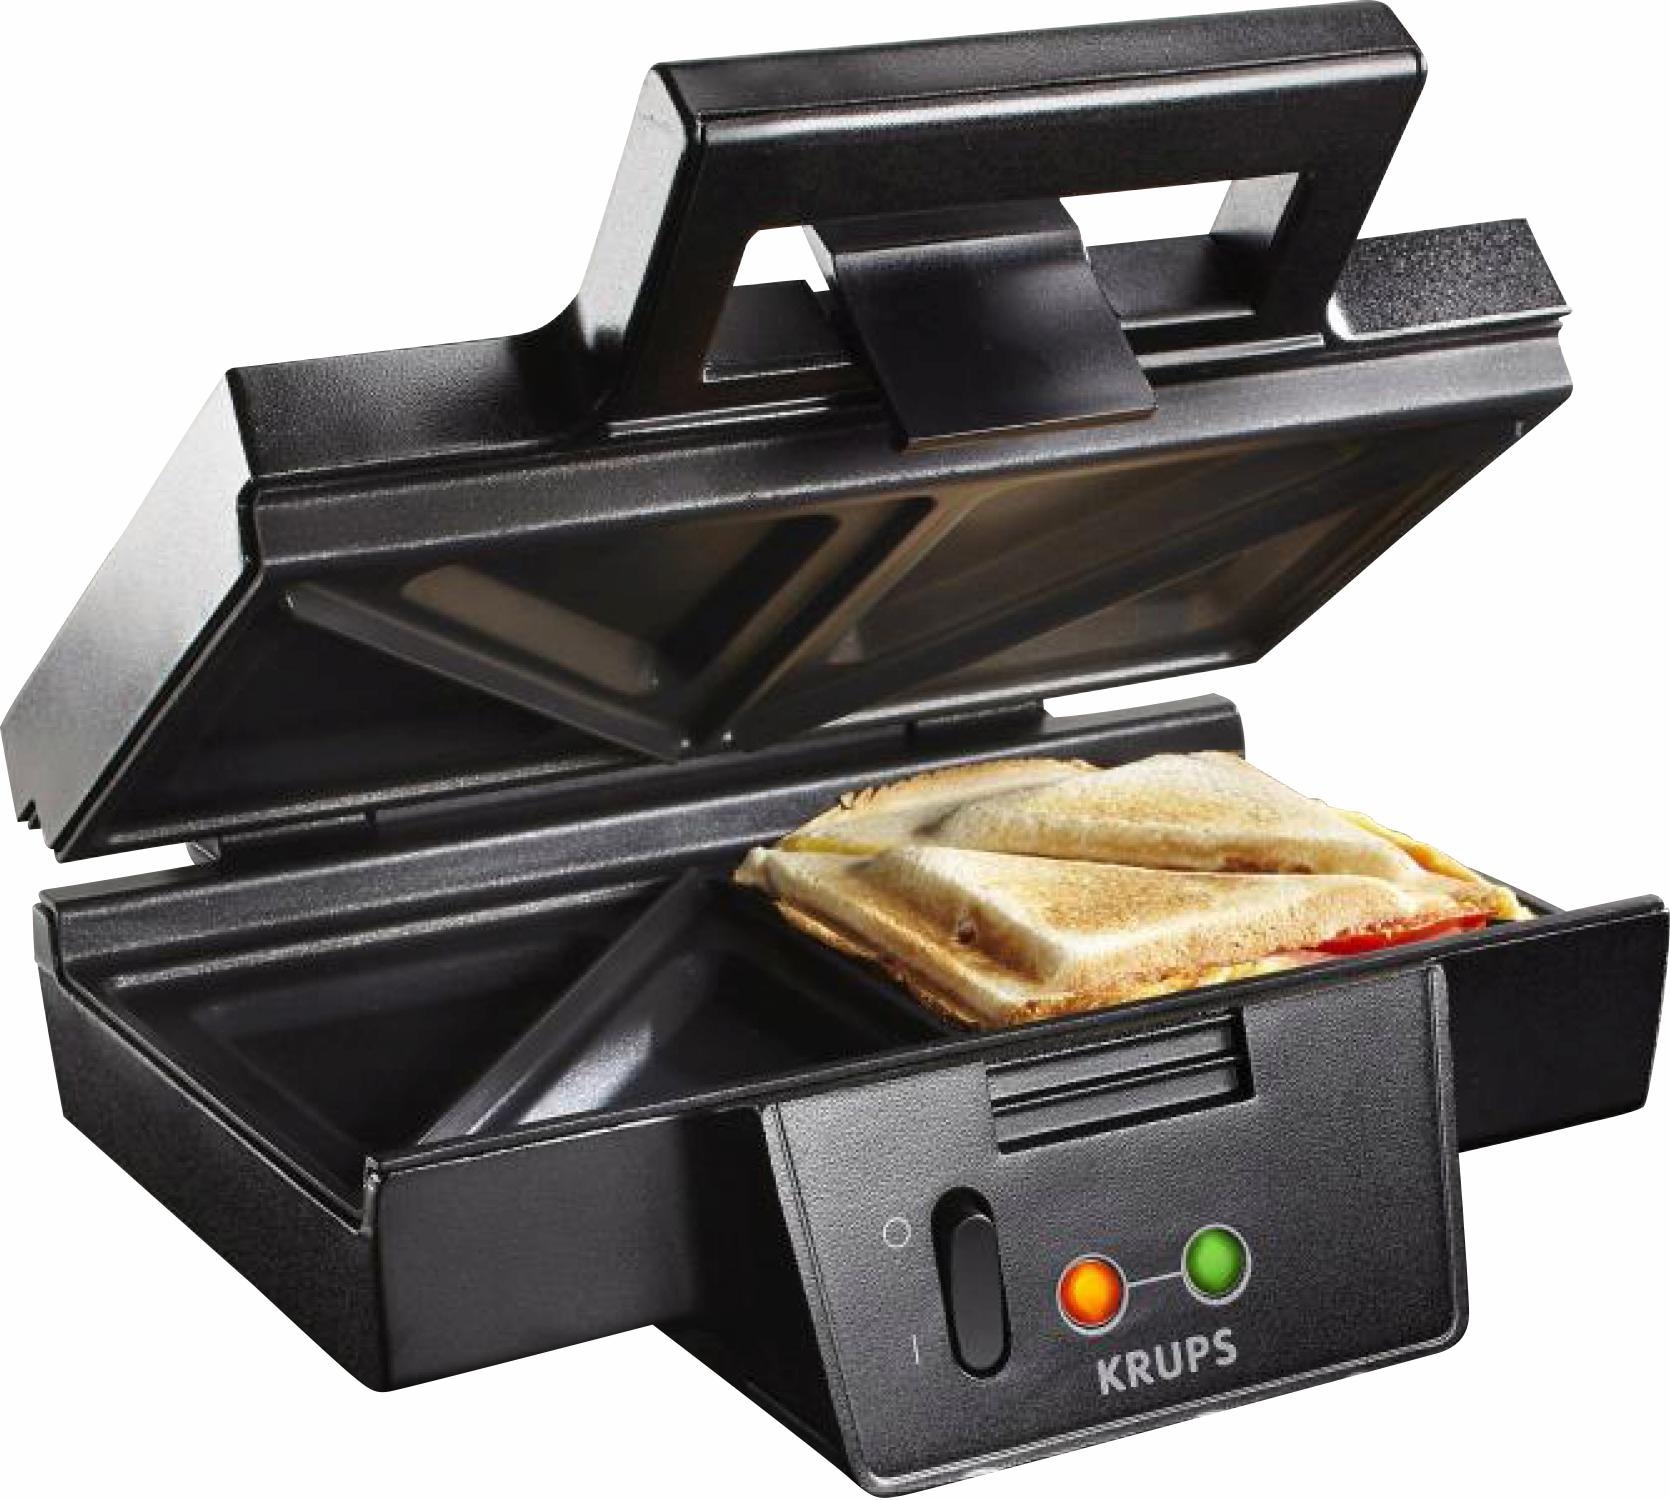 Krups Sandwichmaker FDK451, 850 Watt Rechnung auf kaufen